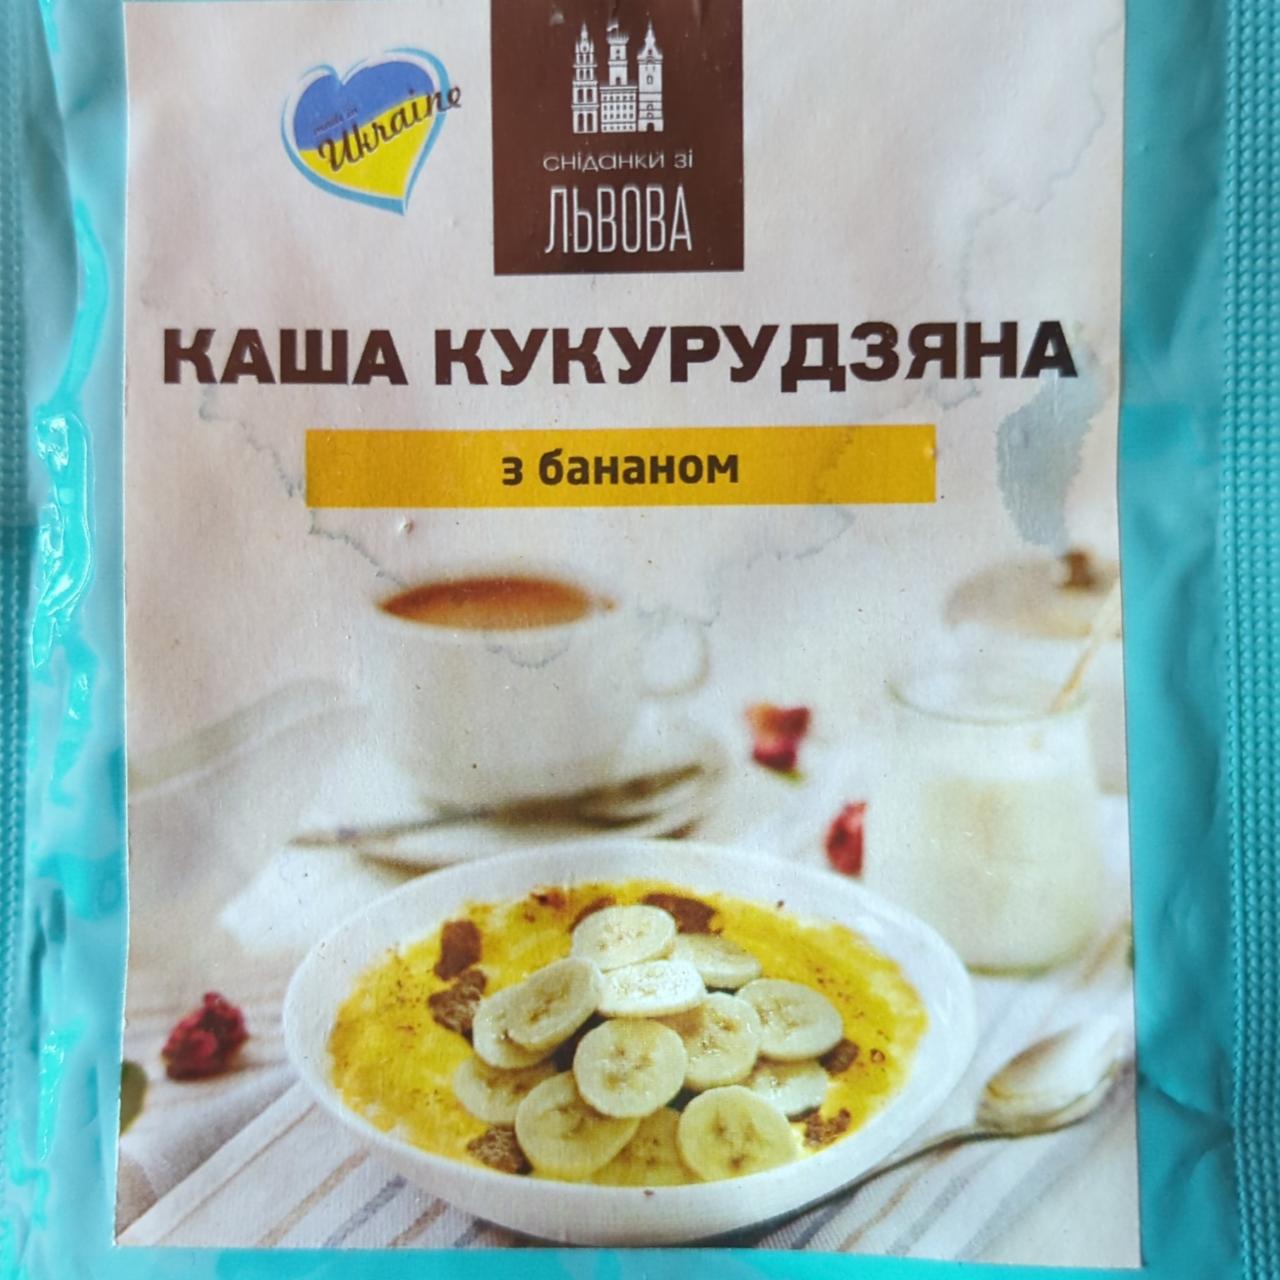 Фото - Каша кукурудзяна з бананом Сніданки зі Львова